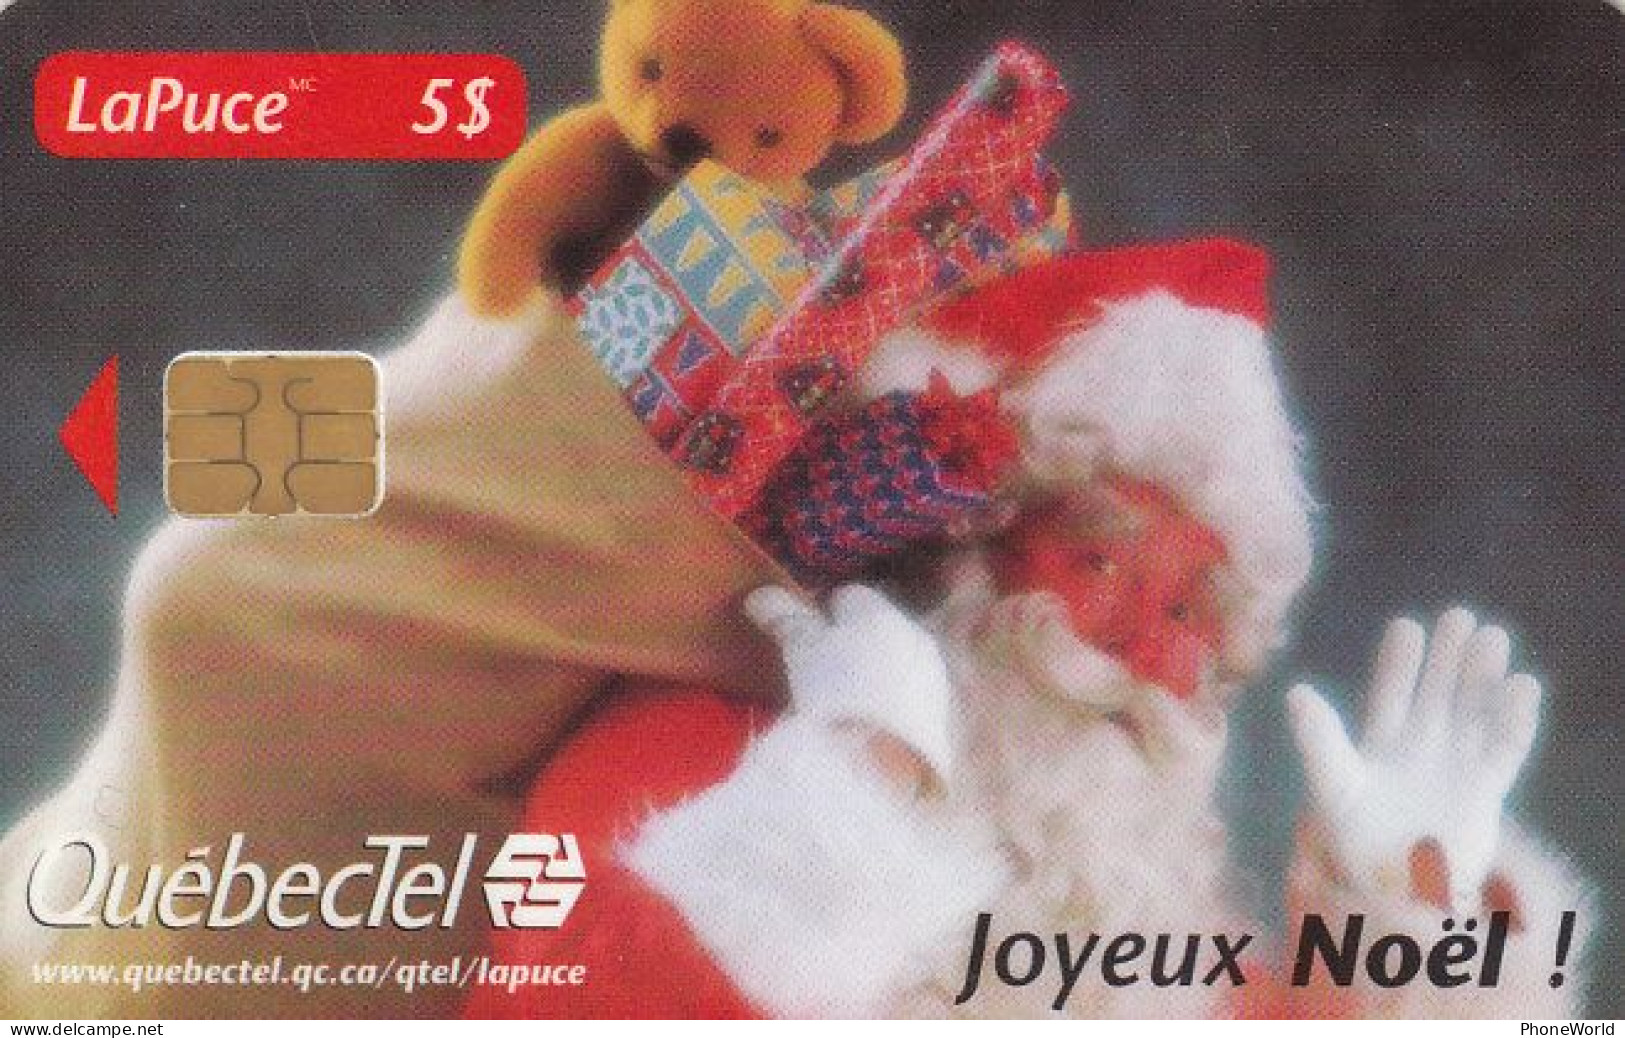 Canada - QuébecTel - Joyeux Noël!, MINT, Christmas & Santa, 98 11 10073, 3.000ex, TOP - Canada